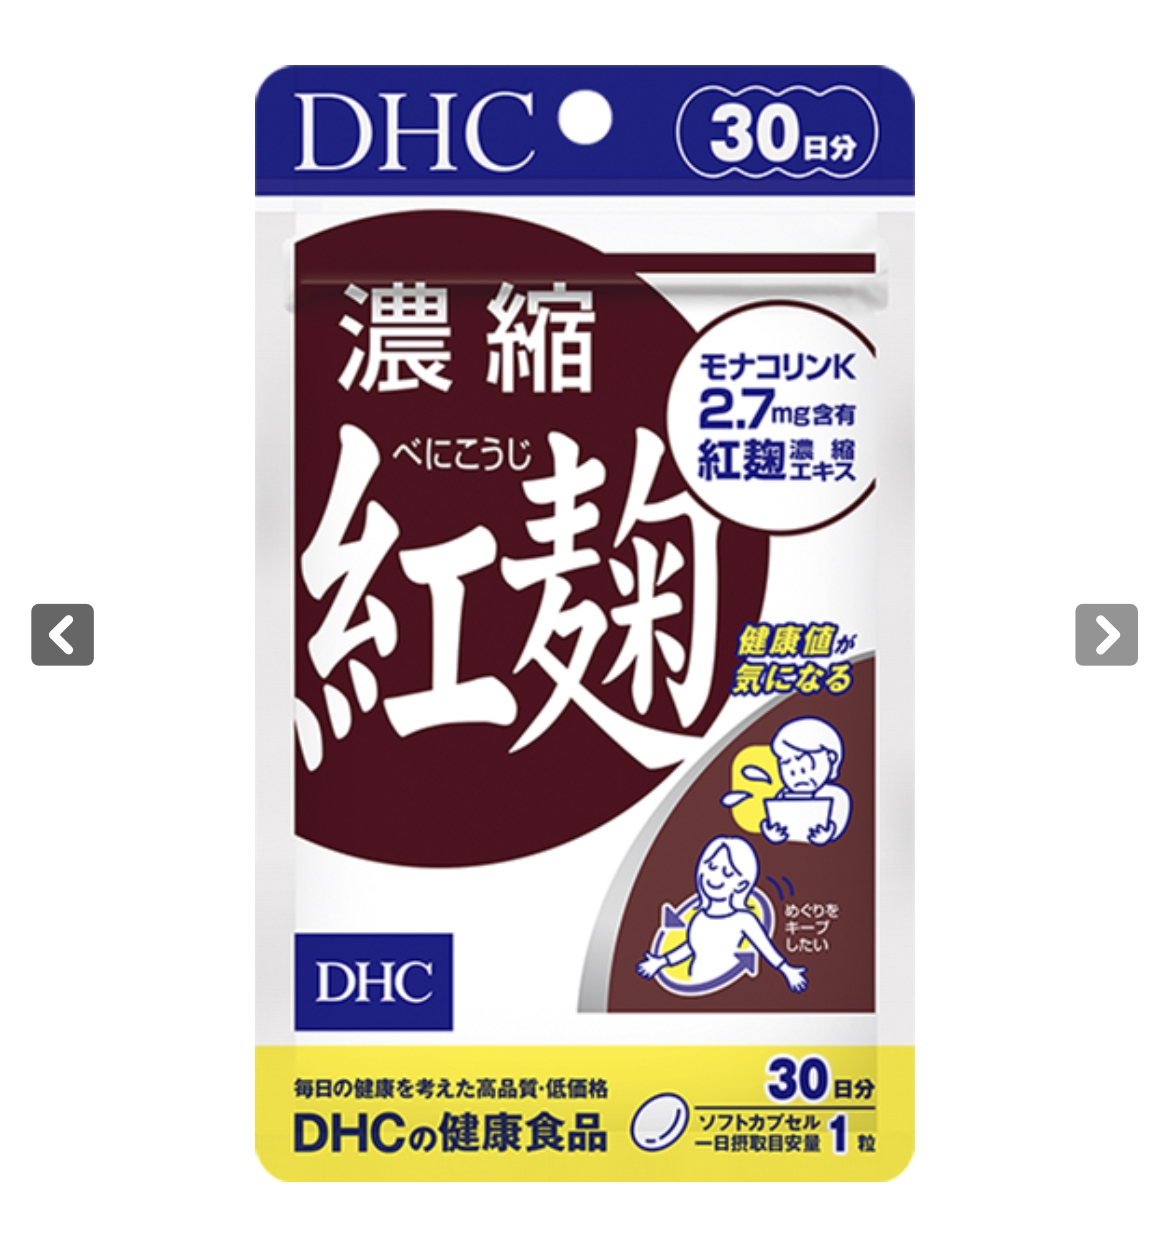 DHC(ディーエイチシー) 濃縮紅麹の良い点・メリットに関するmeg22882288さんの口コミ画像1